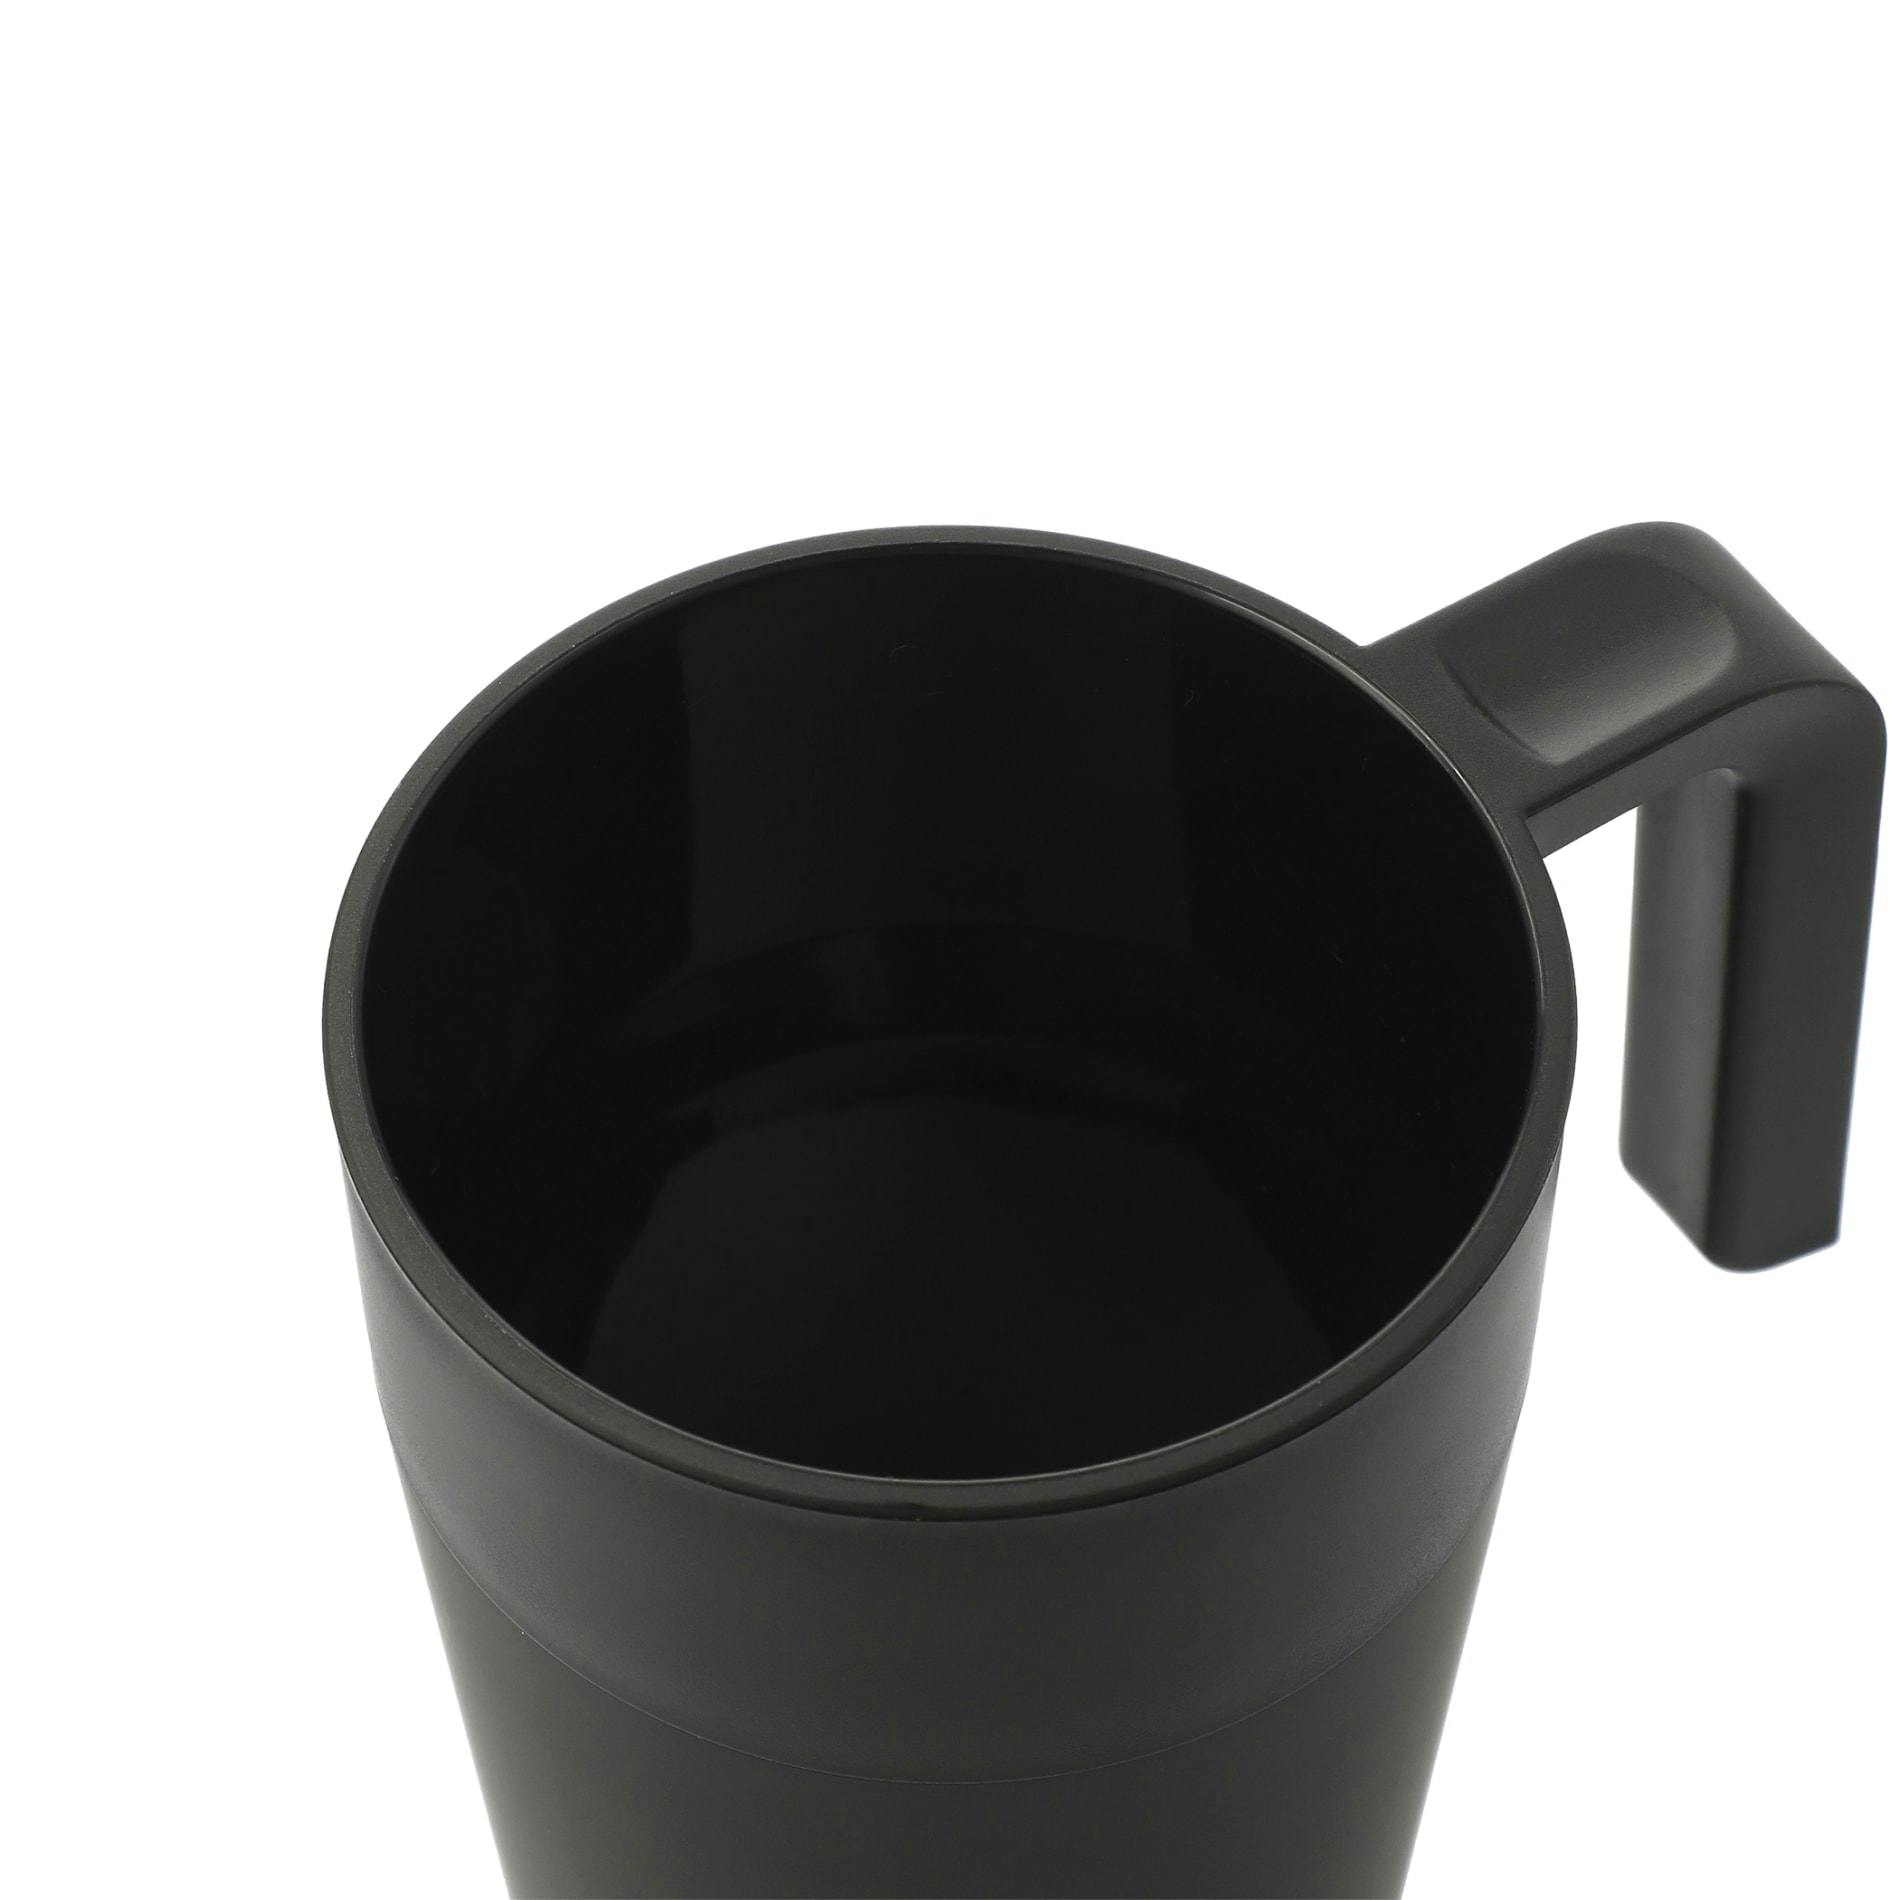 Sigrid 16oz ECO Mug with Recycled Plastic - additional Image 1